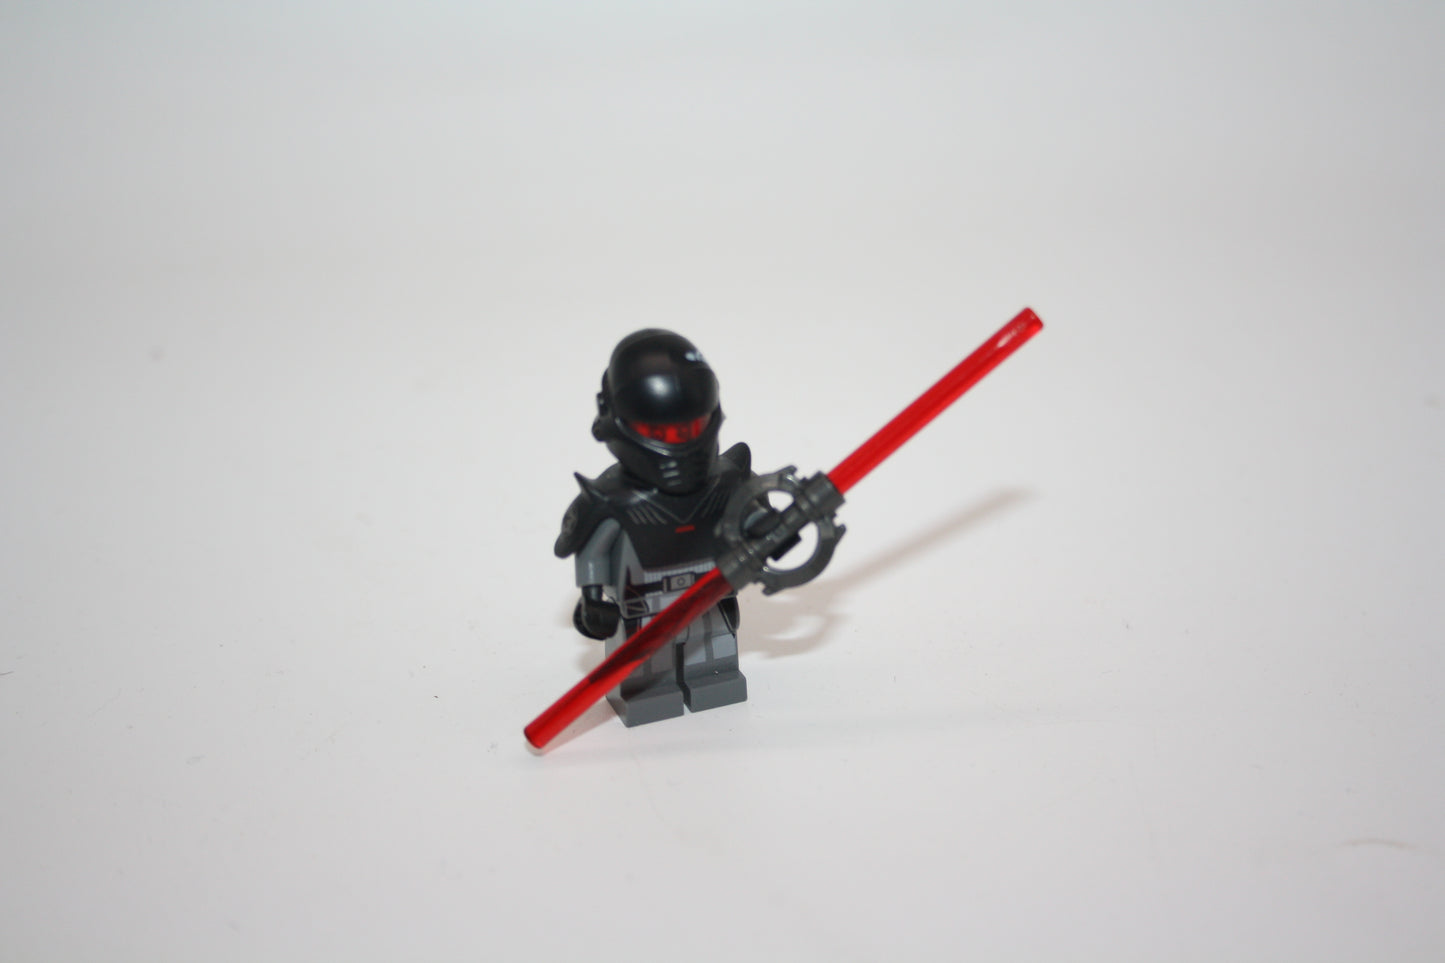 LEGO® Star Wars - Grand Inquisitor inkl. Accessoires (Prototyp)- sw0622 - Figuren/Minifiguren